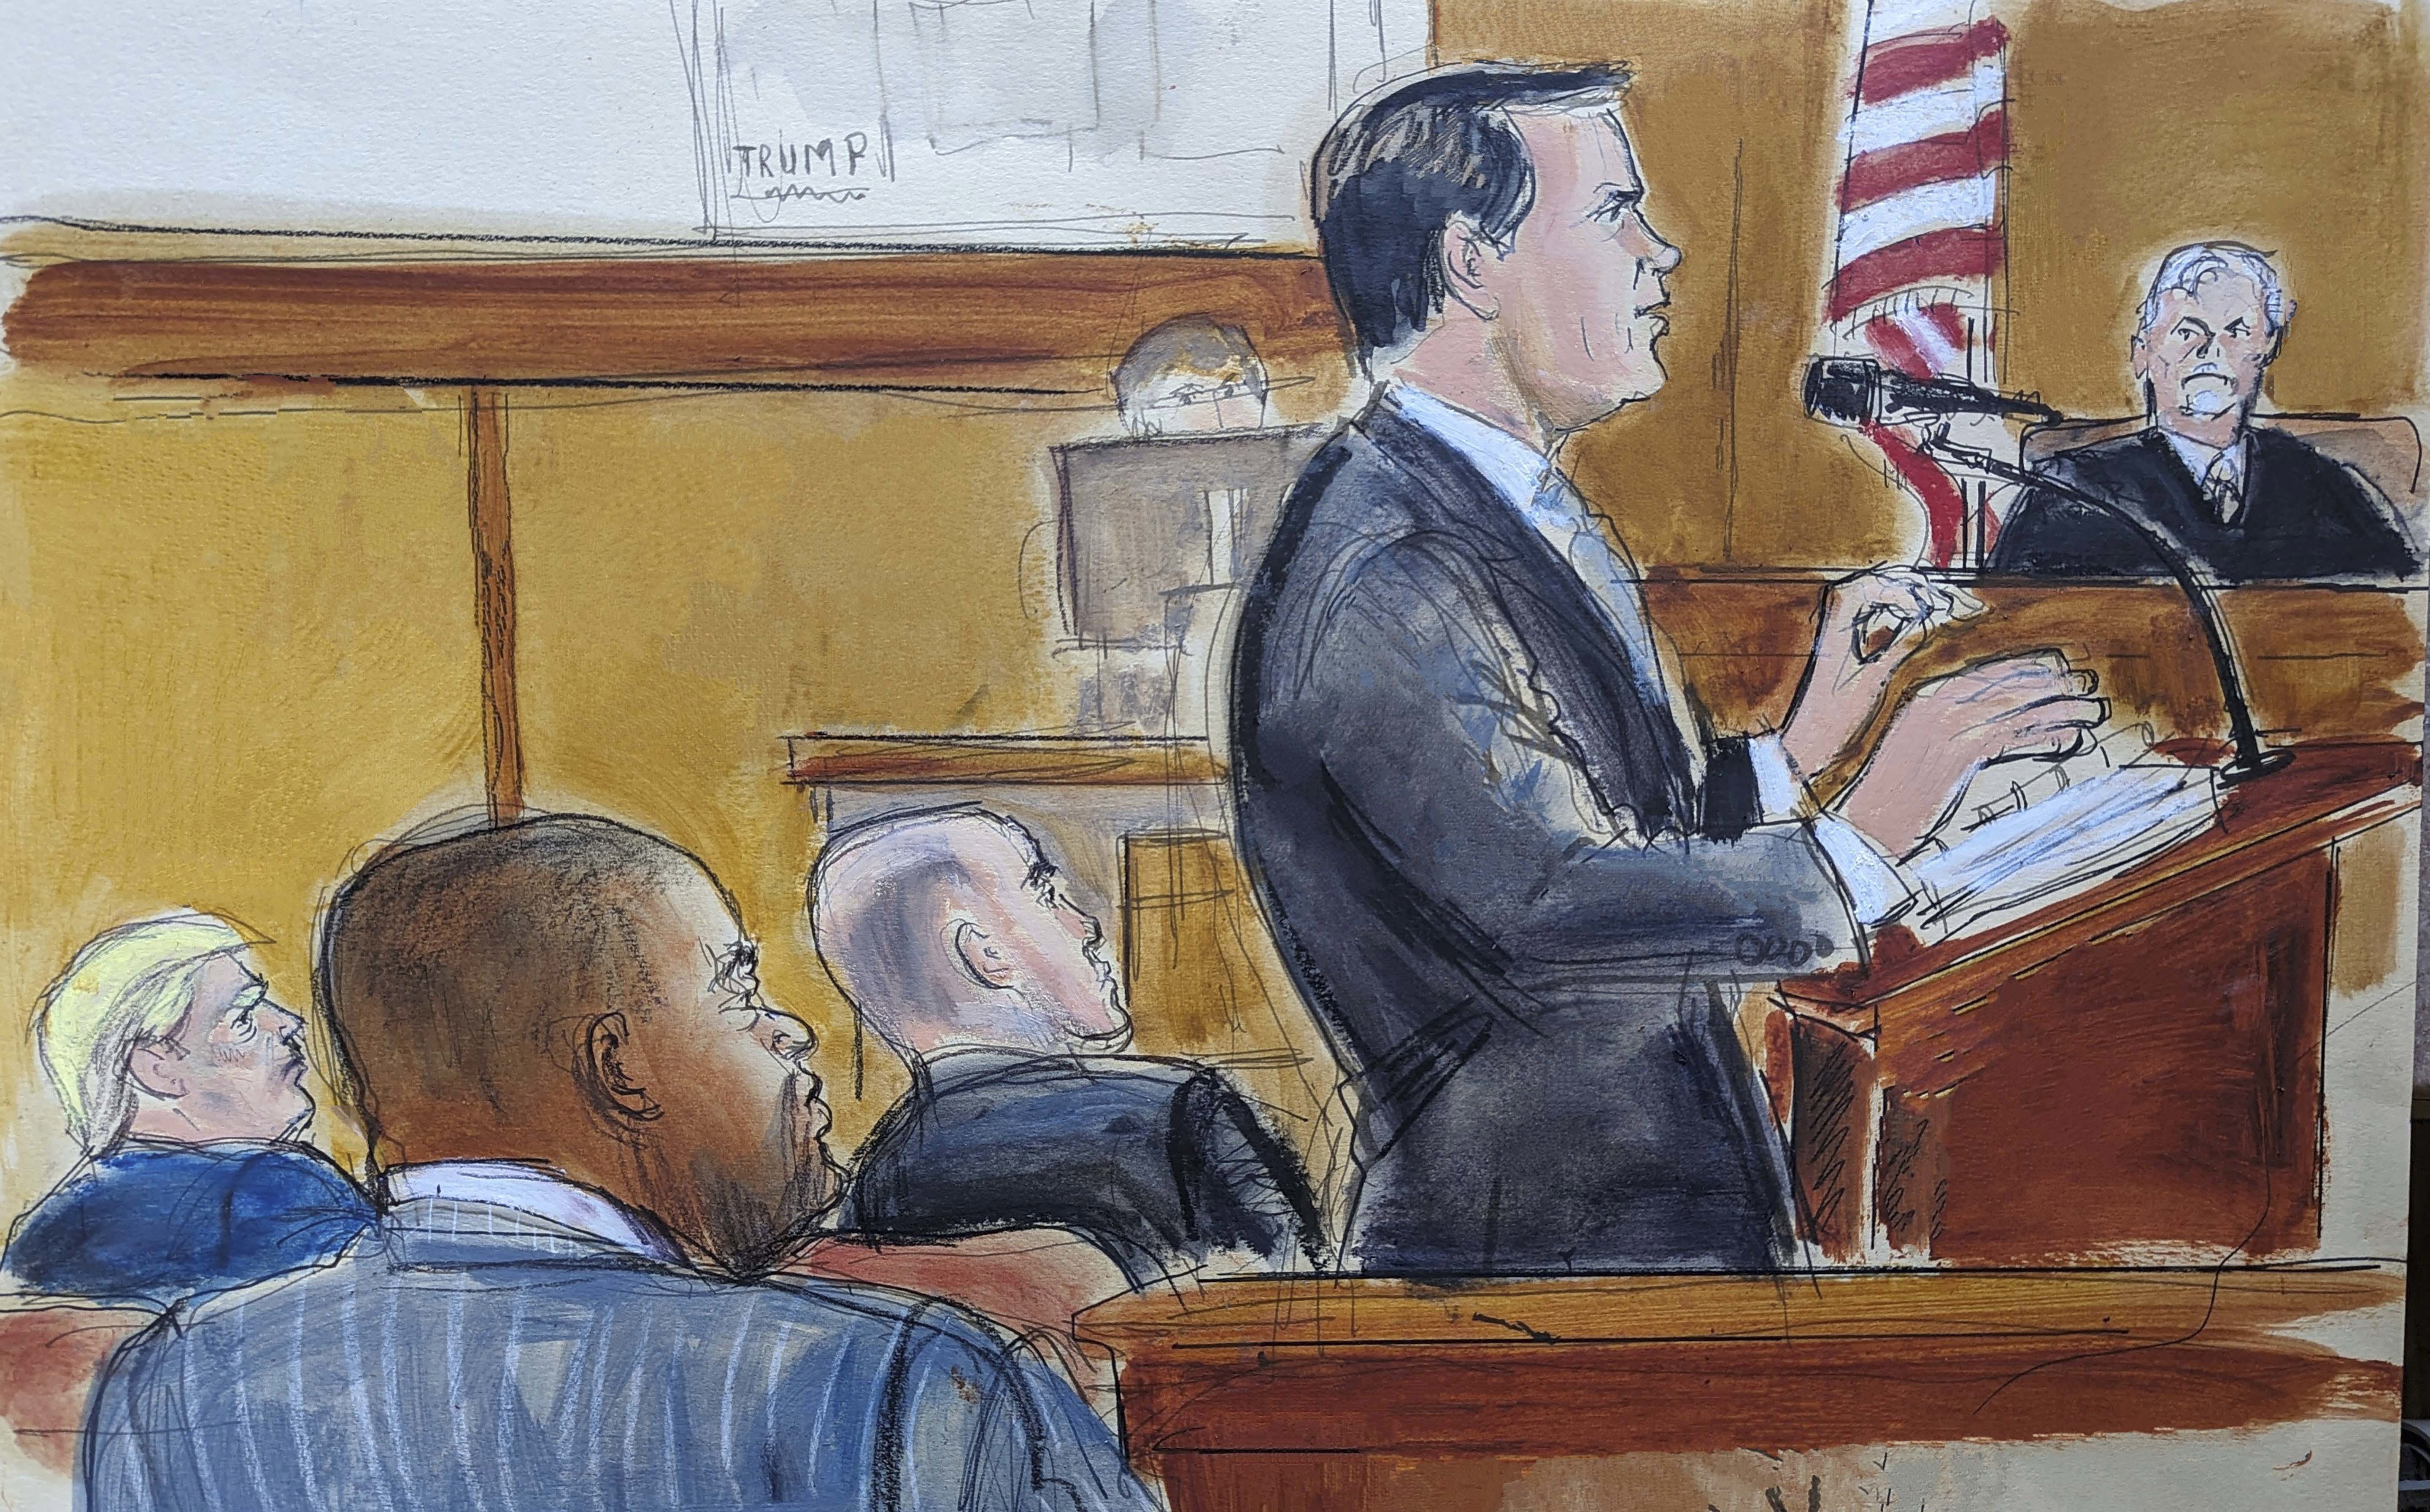 Testigo clave mintió en el estrado, dice abogado de Trump al jurado